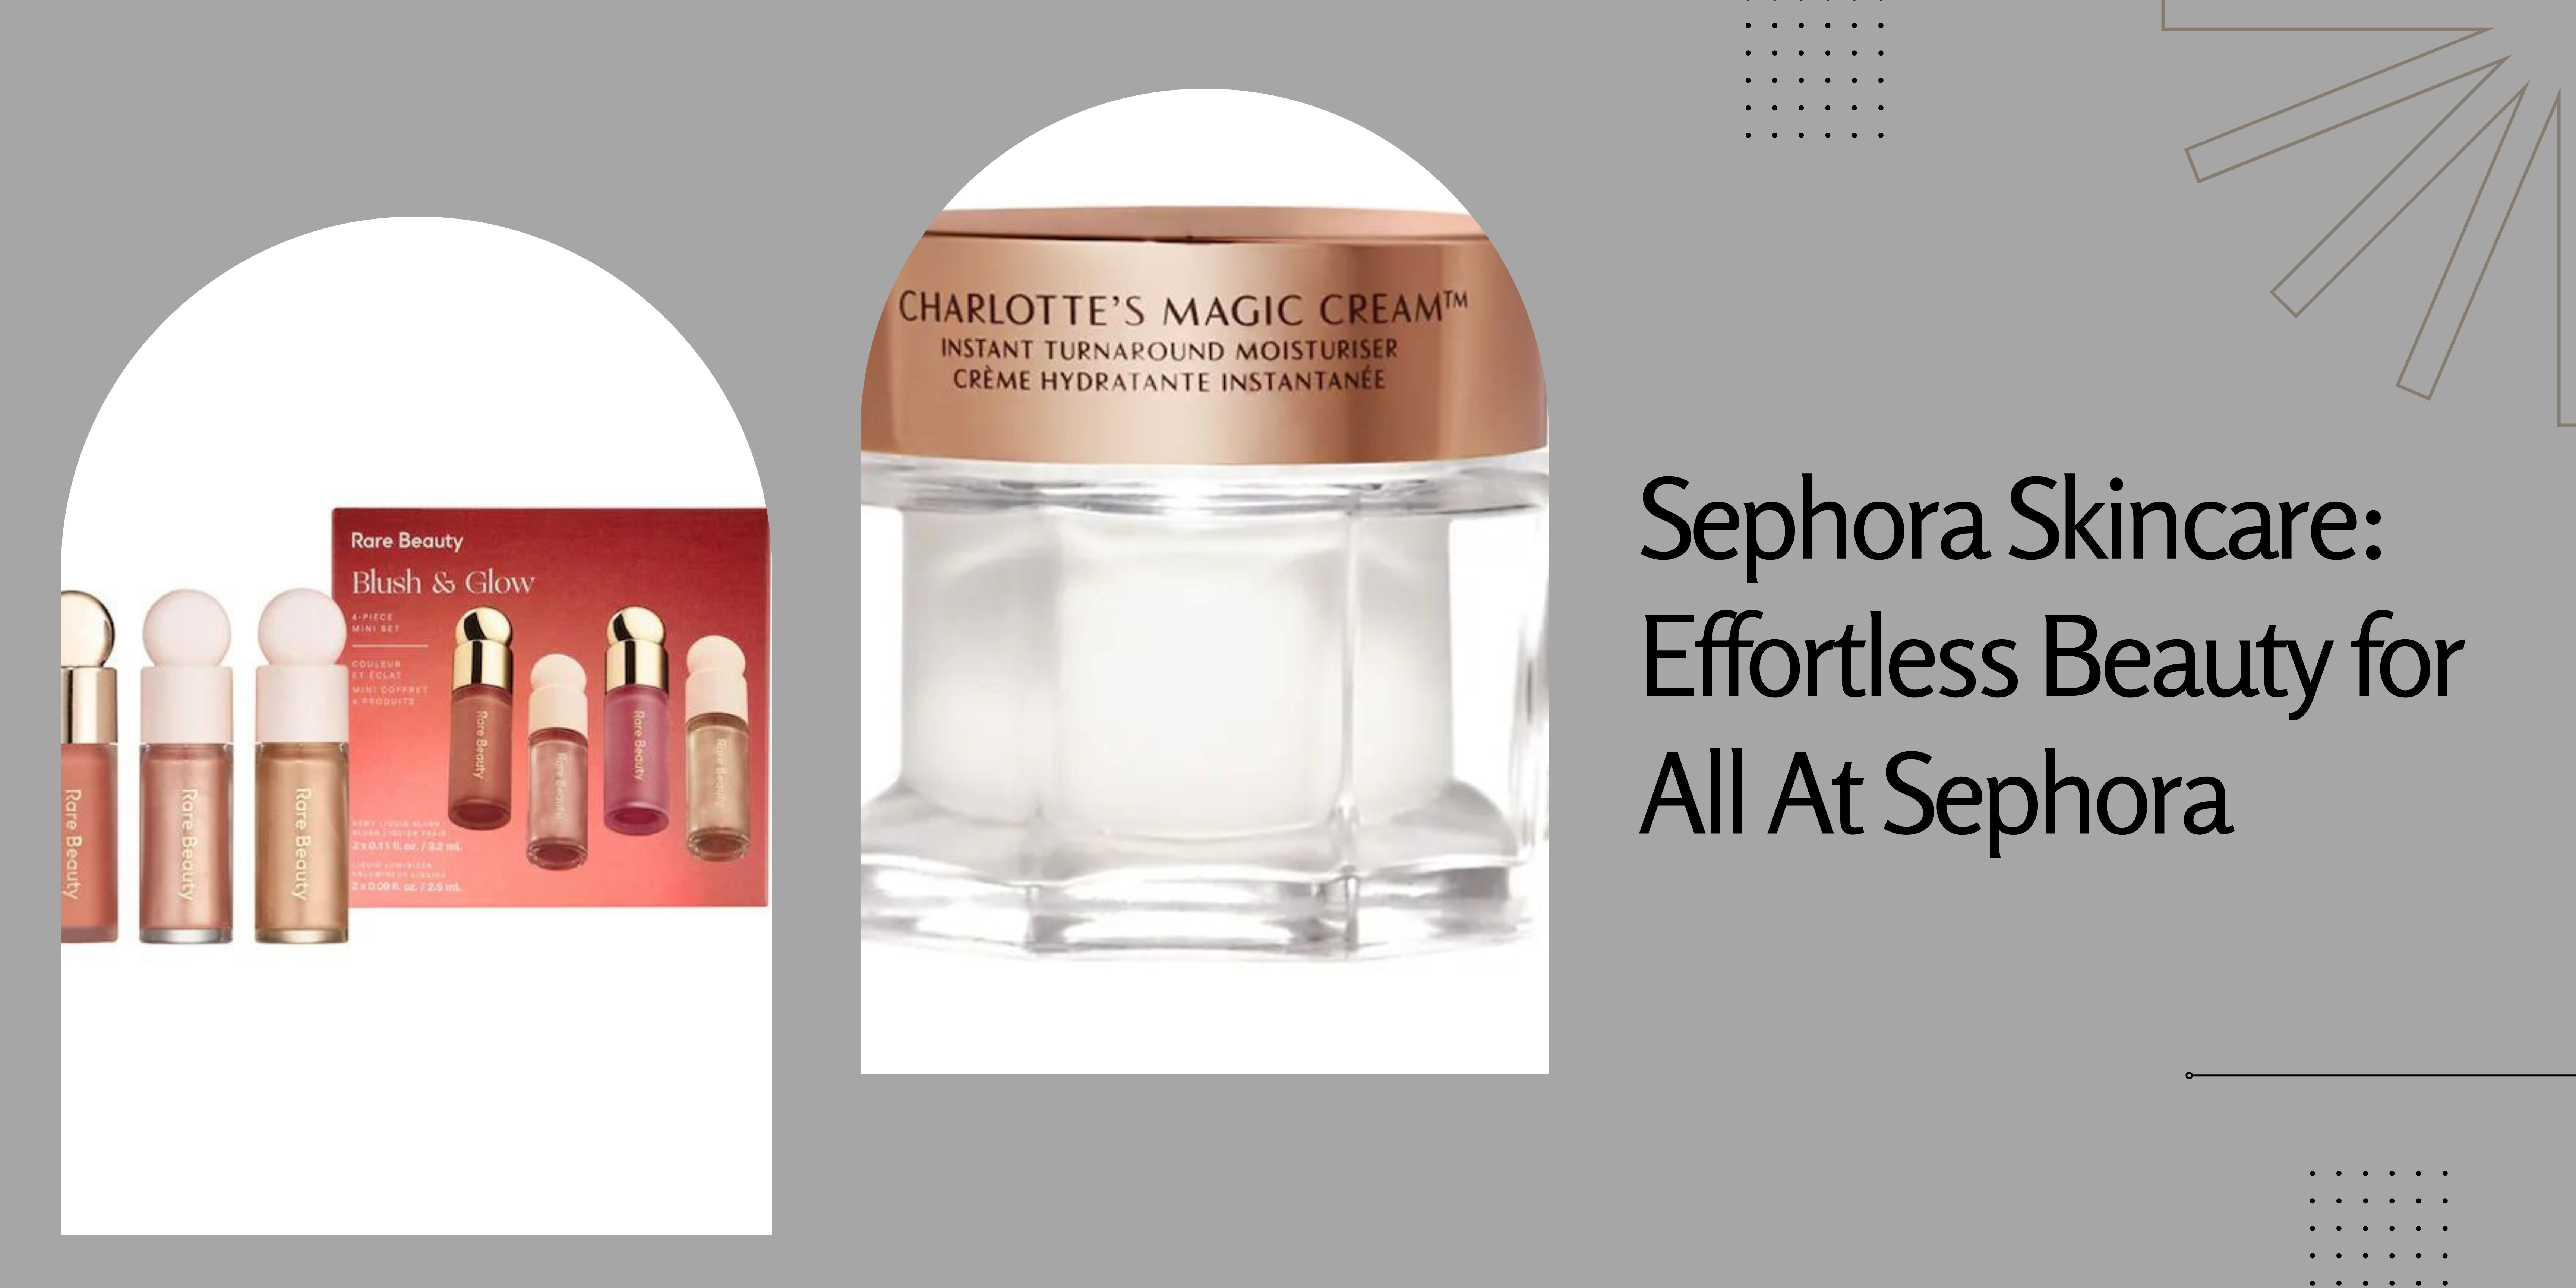 Sephora Makeup: Enhancing Your Natural Beauty